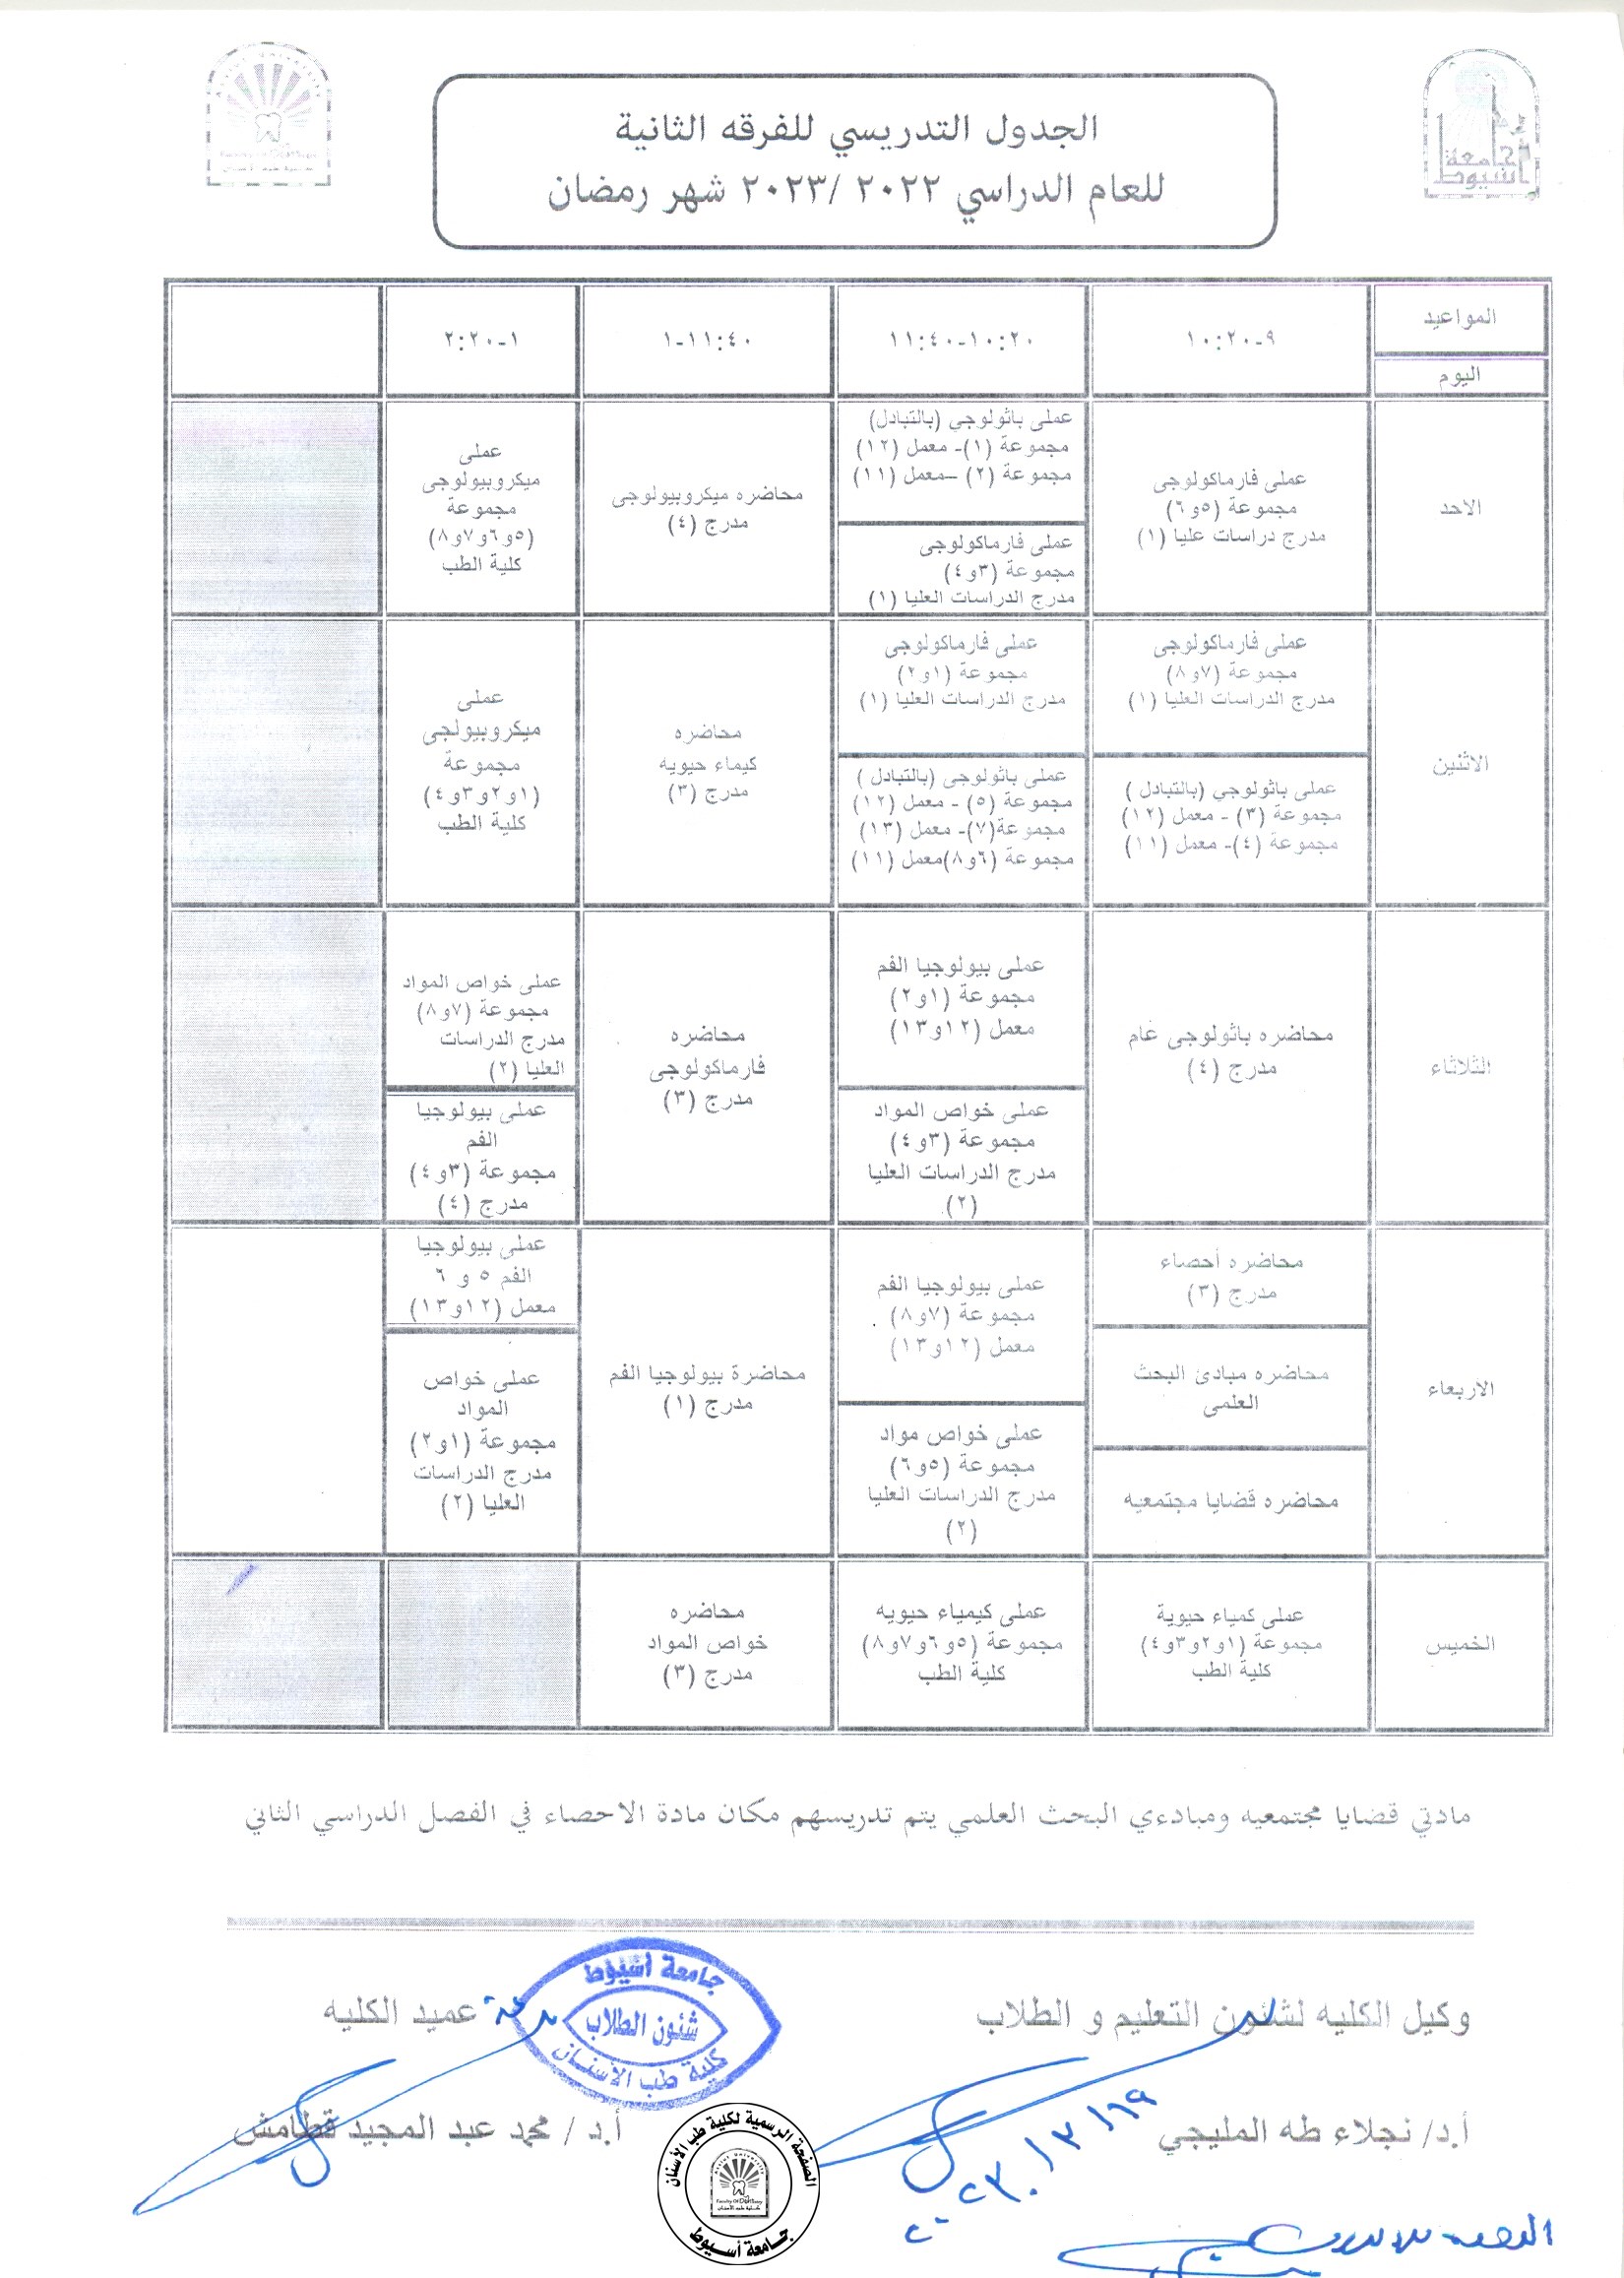 الجدول التدريسي للفرقة الثانية  للعام الدراسي 2022/2023 (شهر رمضان المبارك).